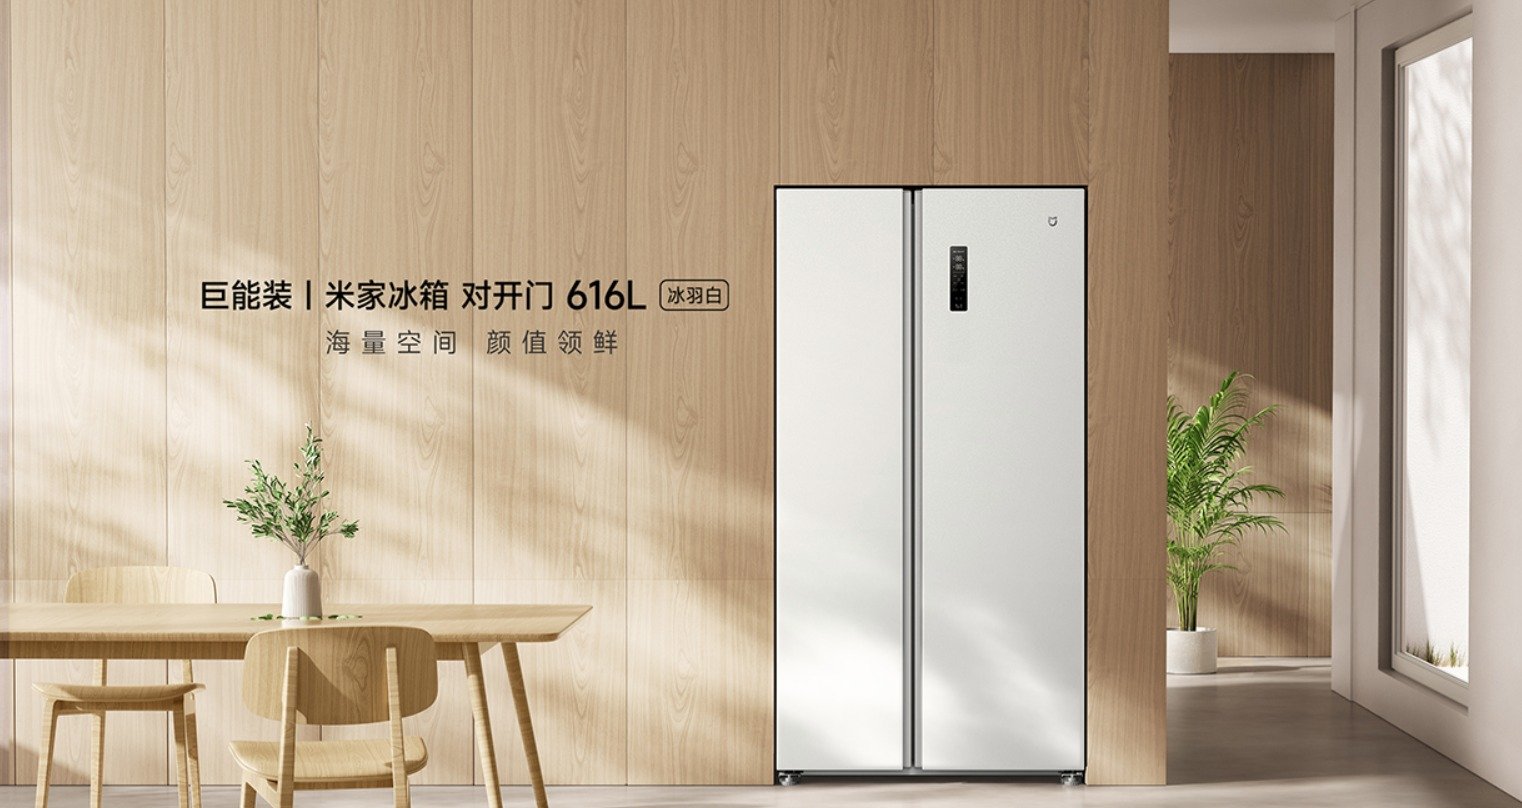 Xiaomi Mijia 616L 병렬 냉장고